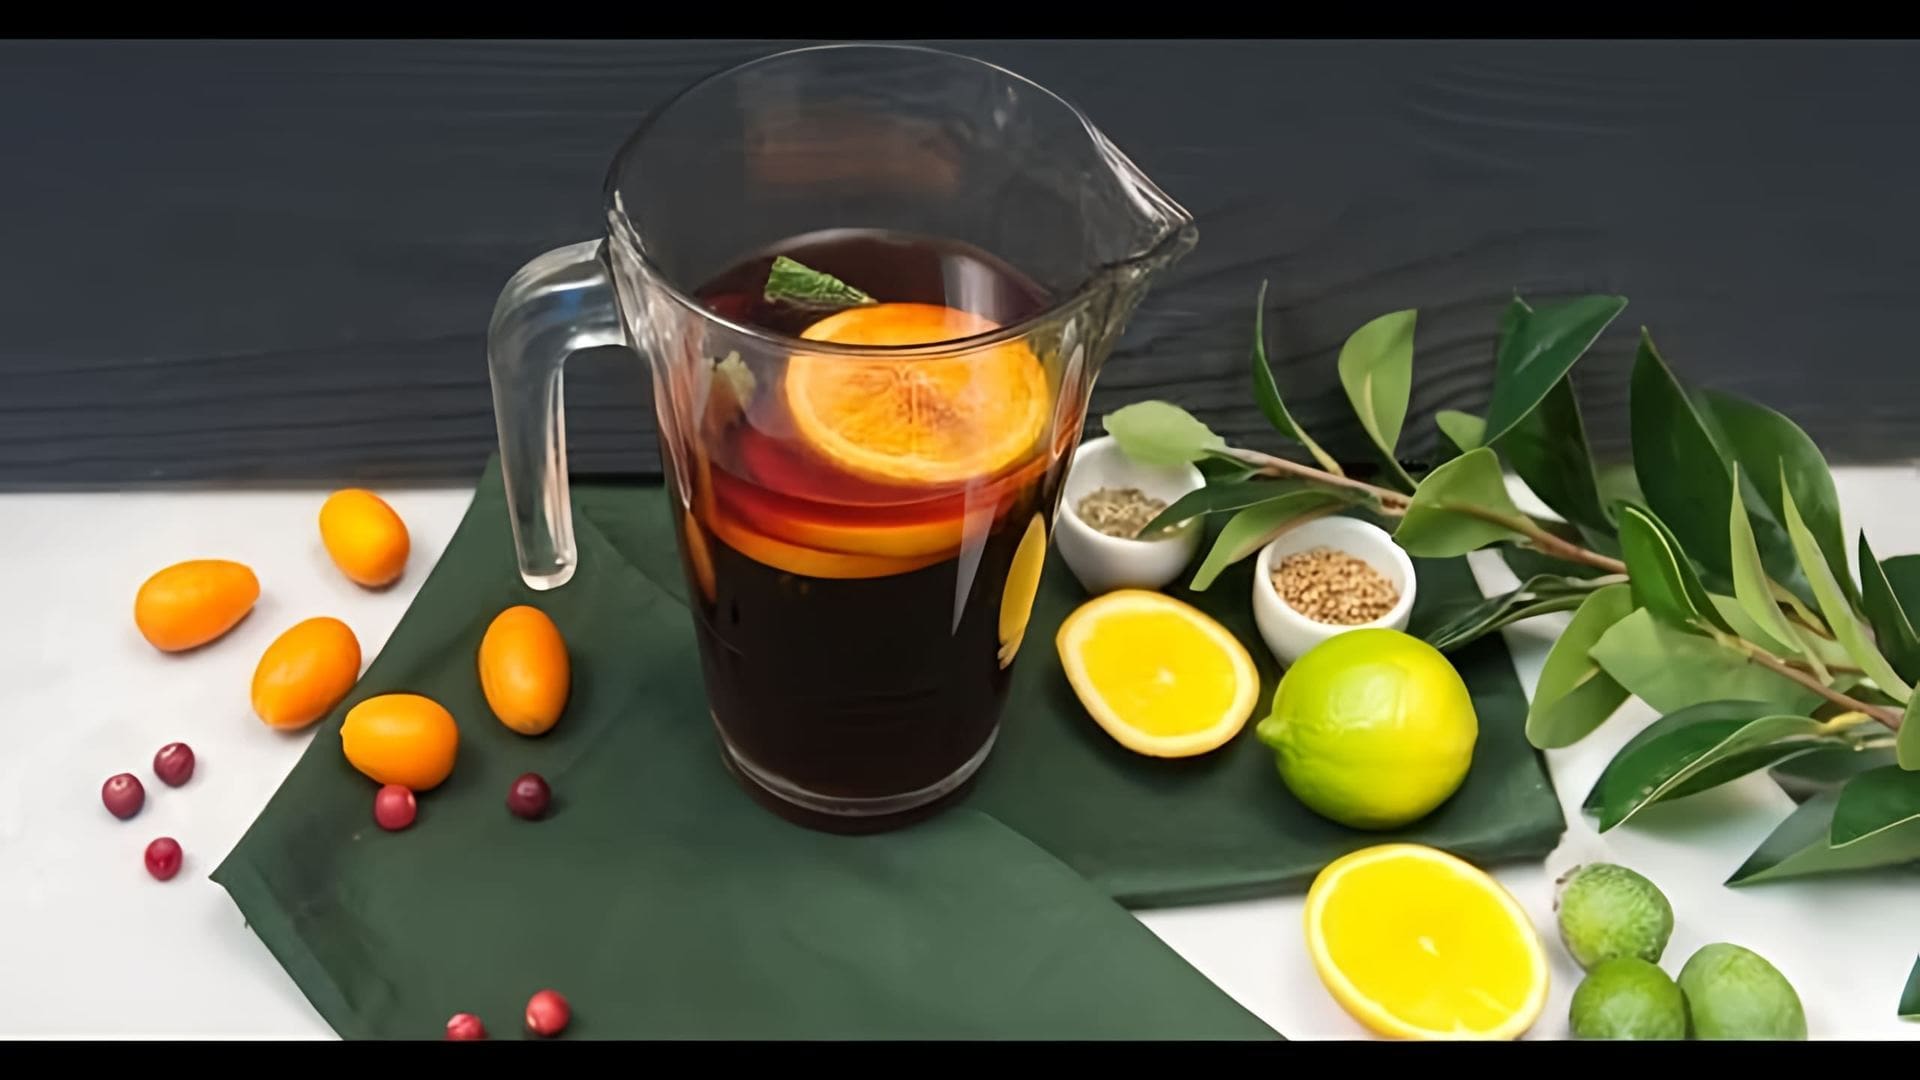 "Напиток из чёрного чая с гранатовым соком - это не только вкусный, но и полезный напиток